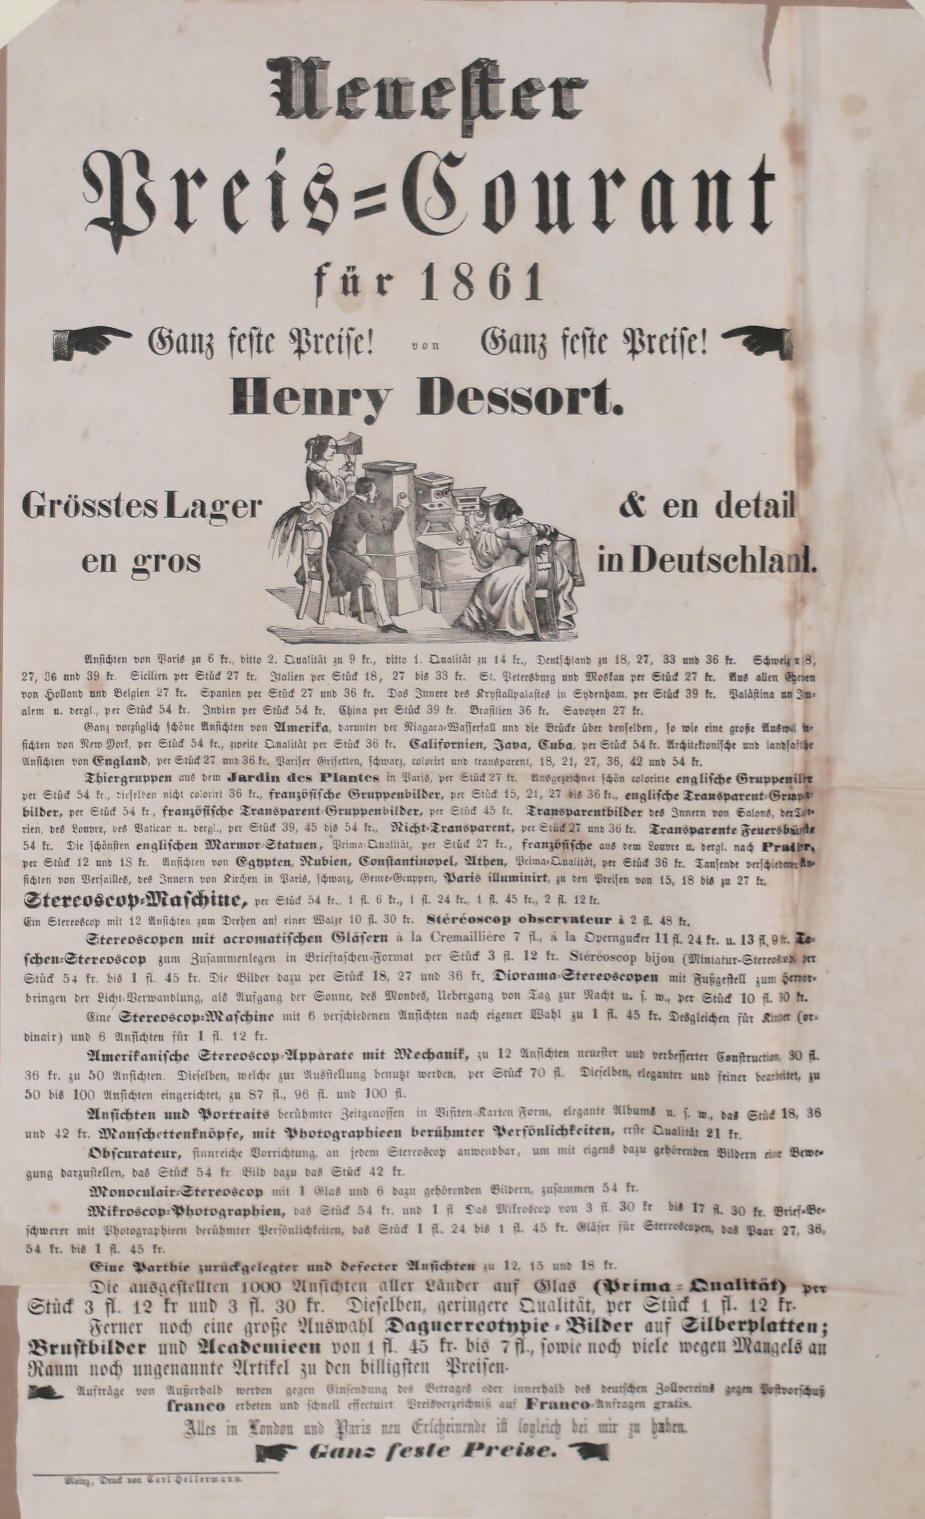  - Neuester Preis-Courant fr 1861 von Henry Dessort. Ganz feste Preise!.